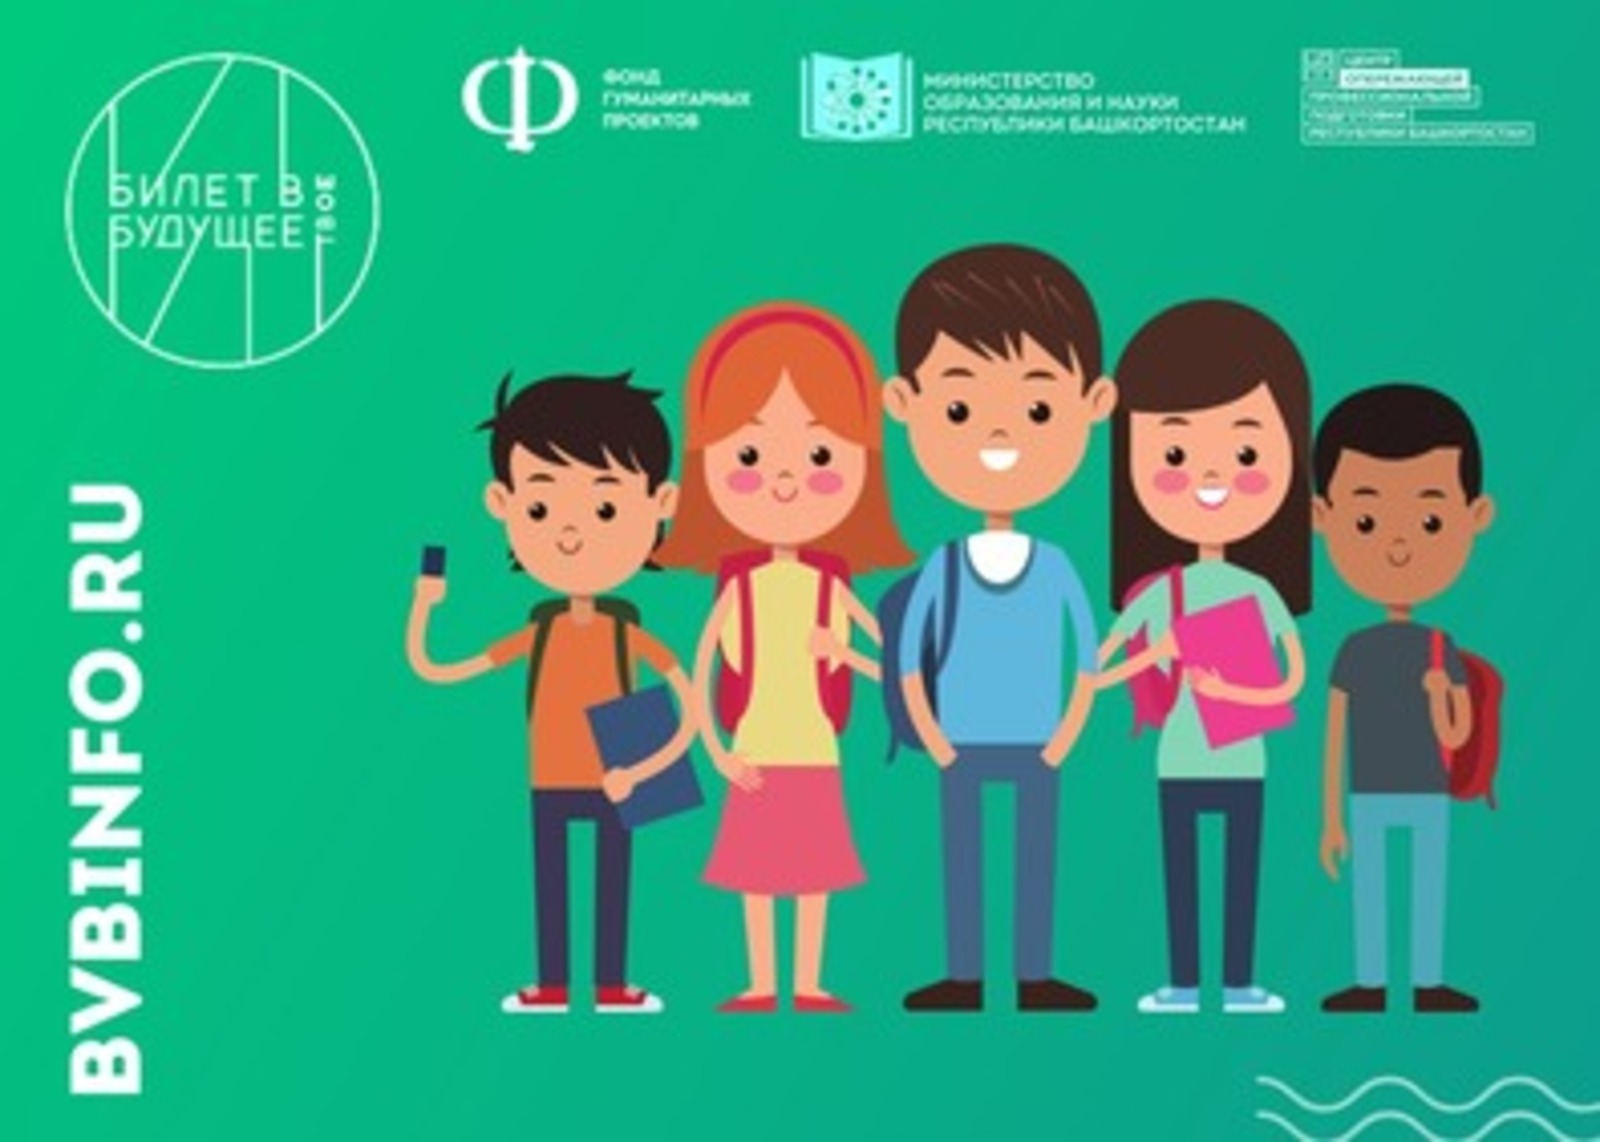 Нацпроект "Образование": 15 тысяч школьников Башкортостана станут участниками проекта «Билет в будущее»